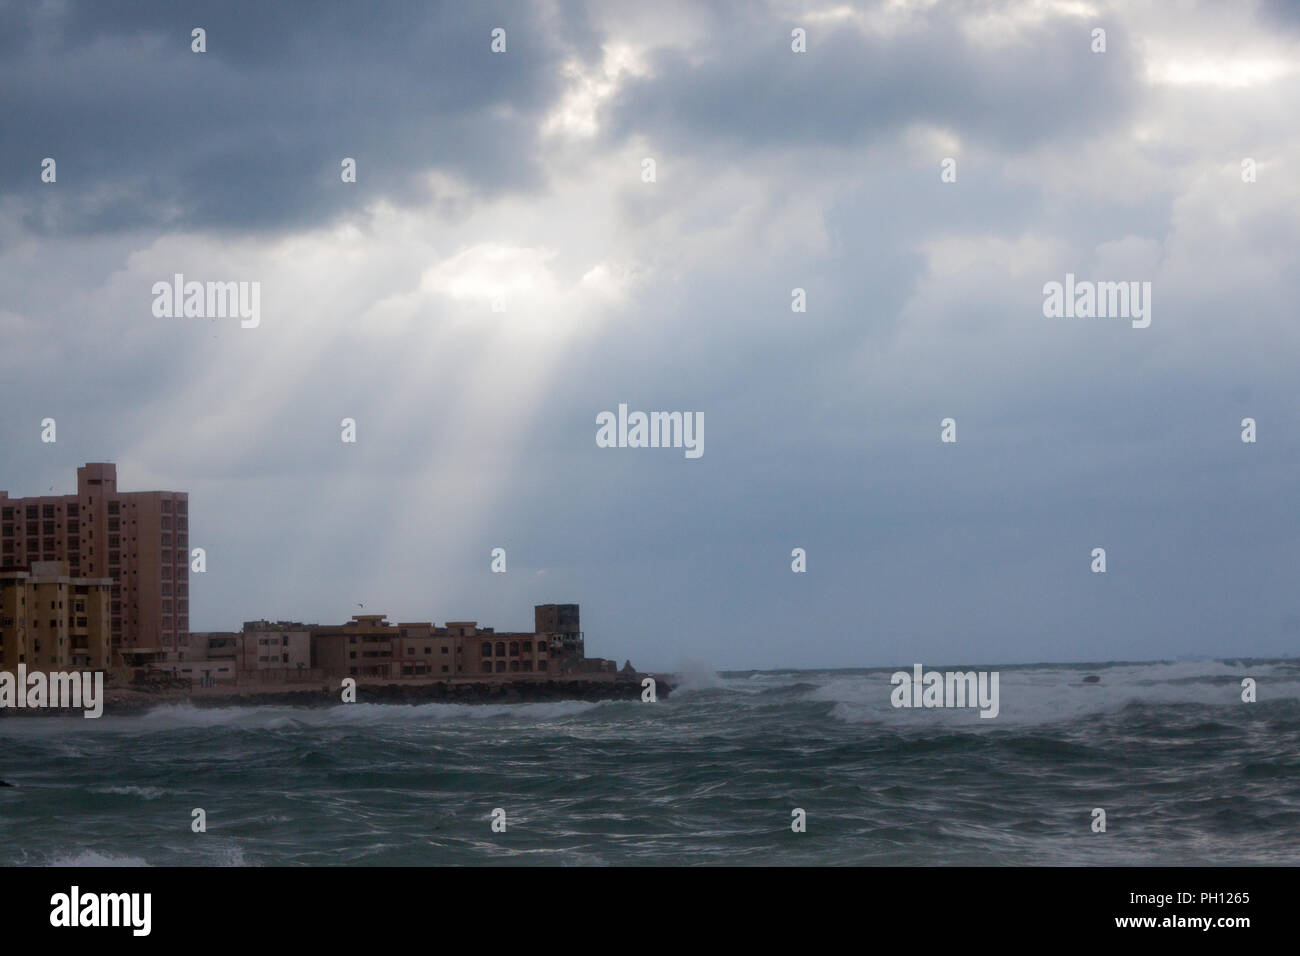 Citadel of Qaitbay Alexandria,Cairo,Egypt 2013 Stock Photo